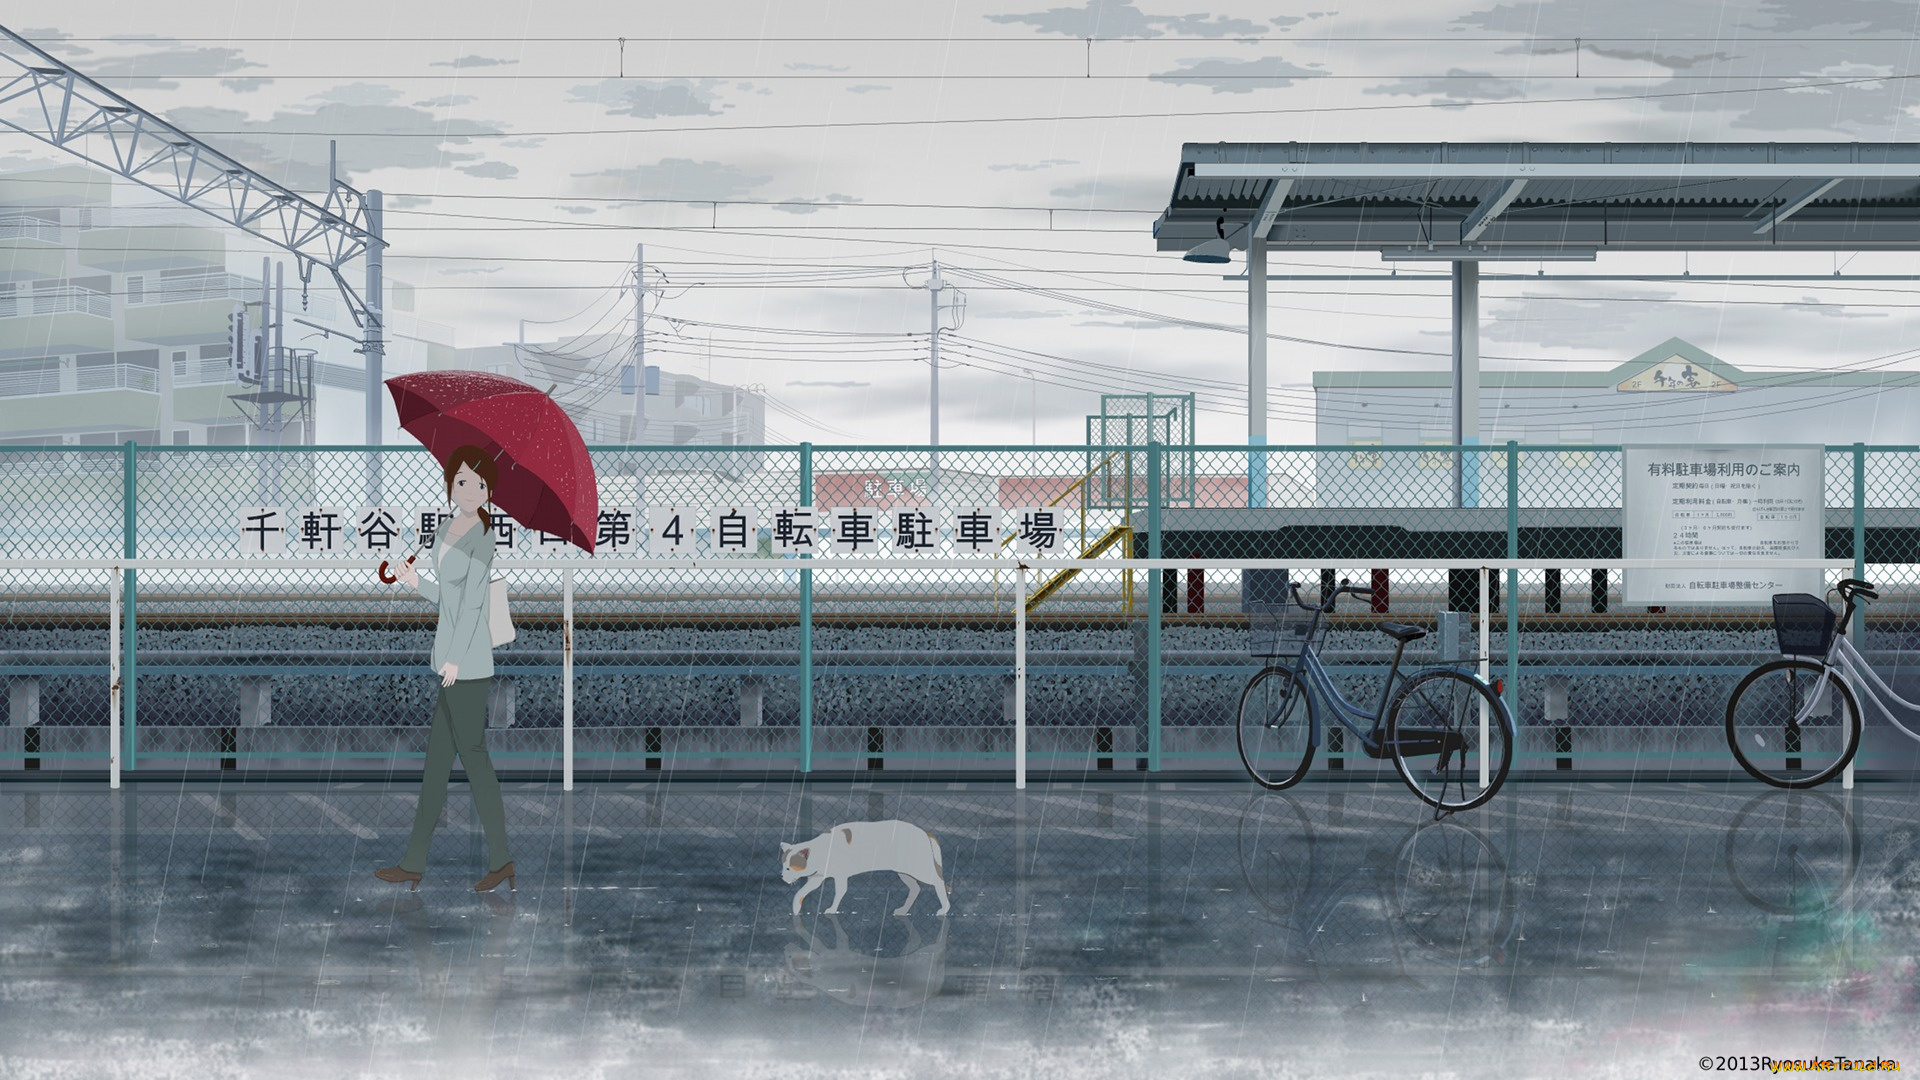 аниме, город, , улицы, , здания, забор, tanaka, ryosuke, велосипед, арт, кот, зонт, девушка, дождь